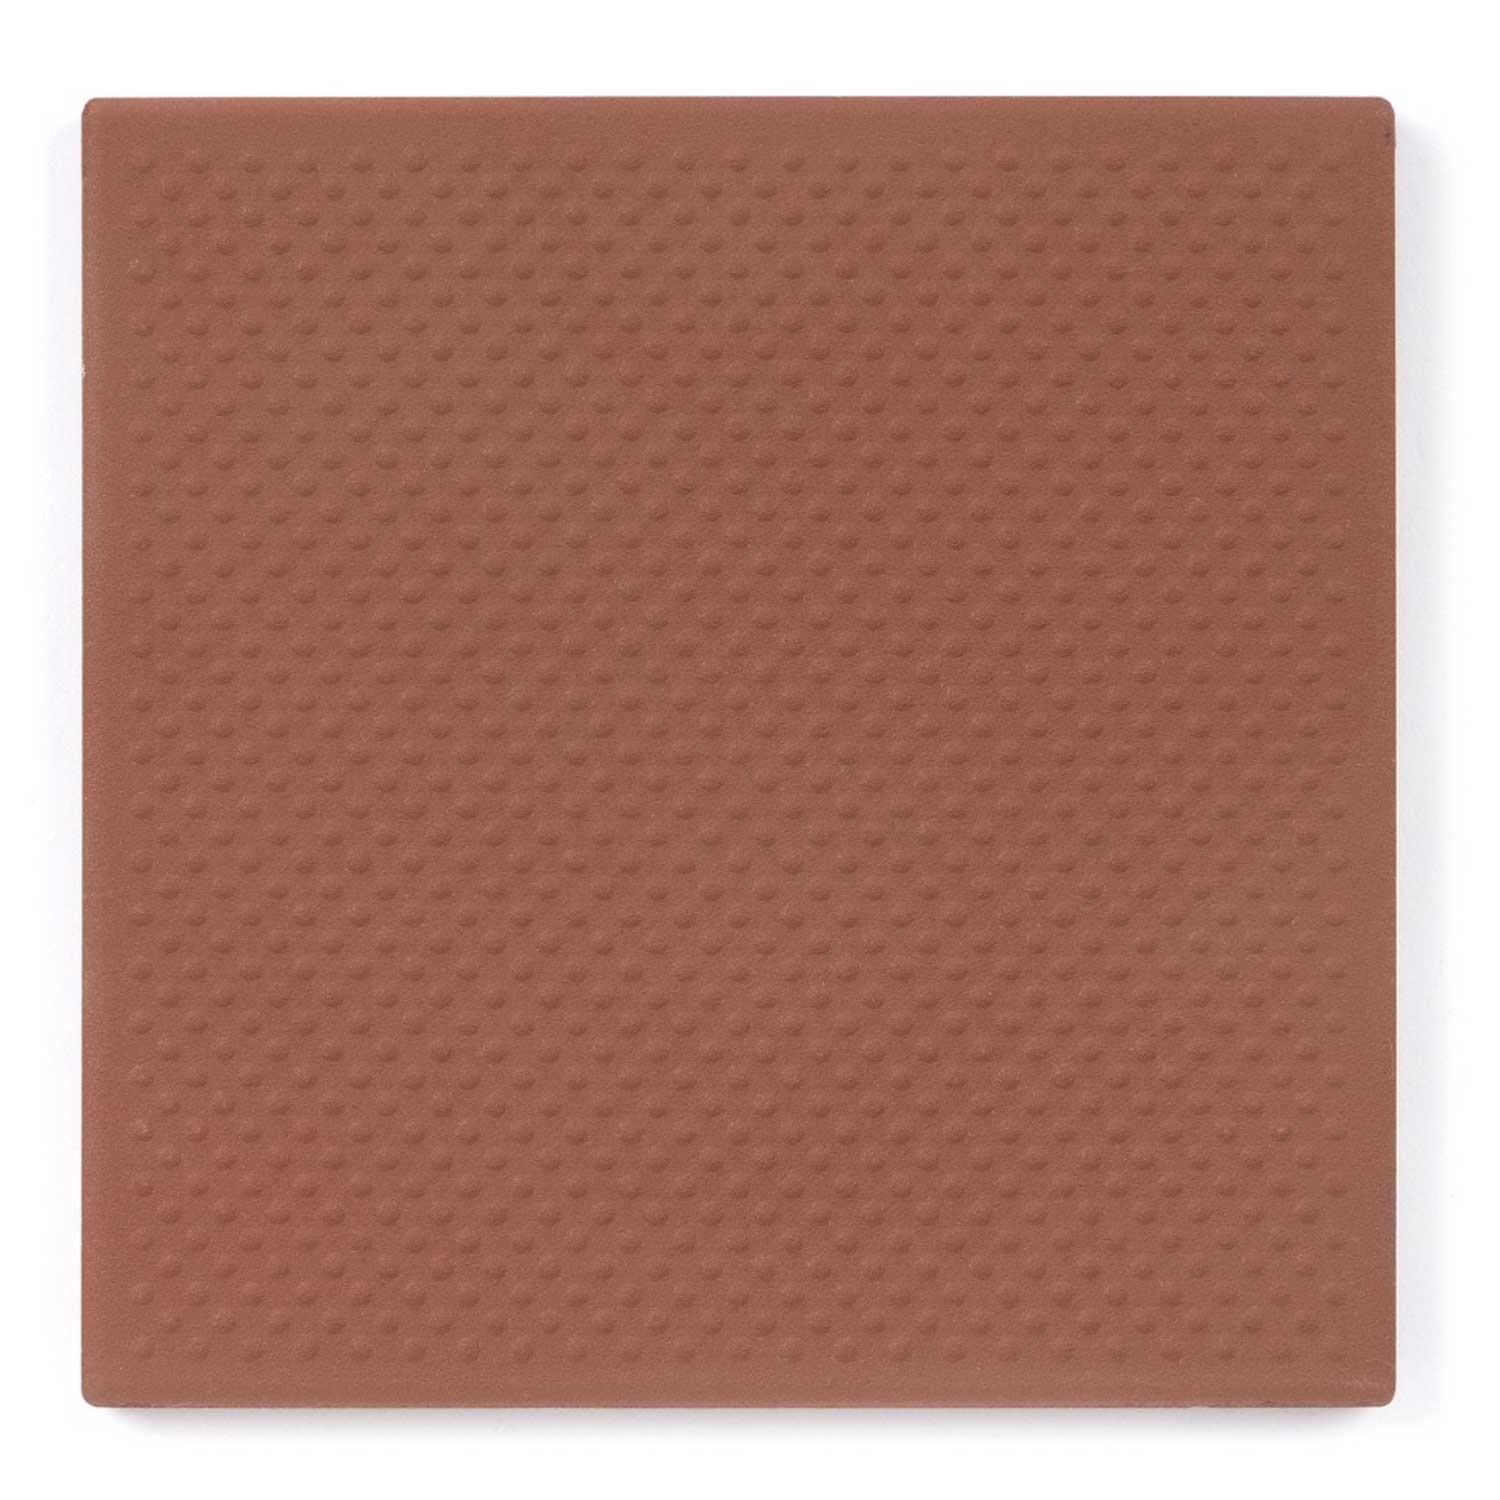 Dorset Red Pinhead Vitrified Porcelain R11 Floor Tile 150x150mm